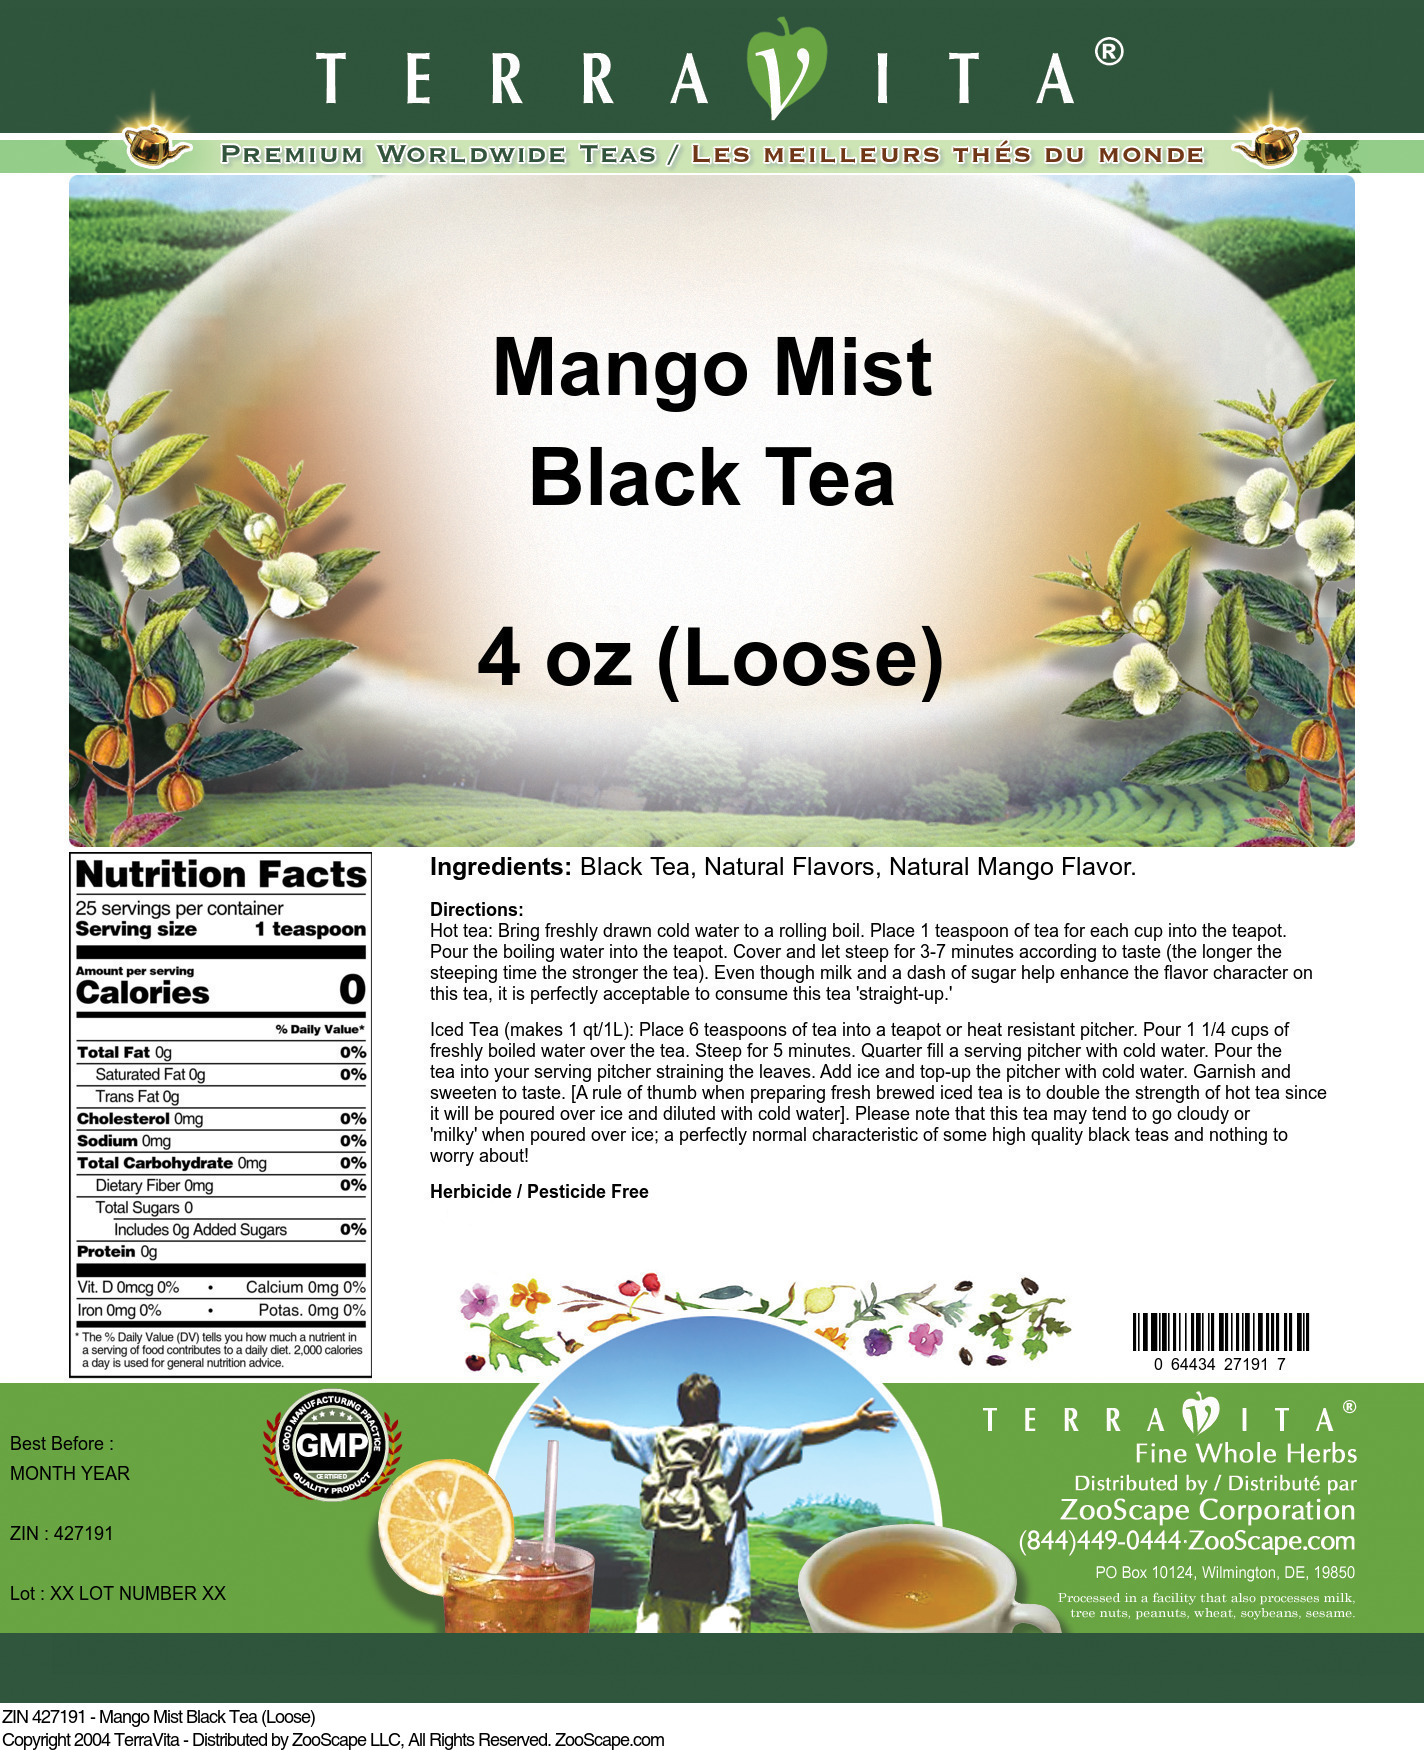 Mango Mist Black Tea (Loose) - Label